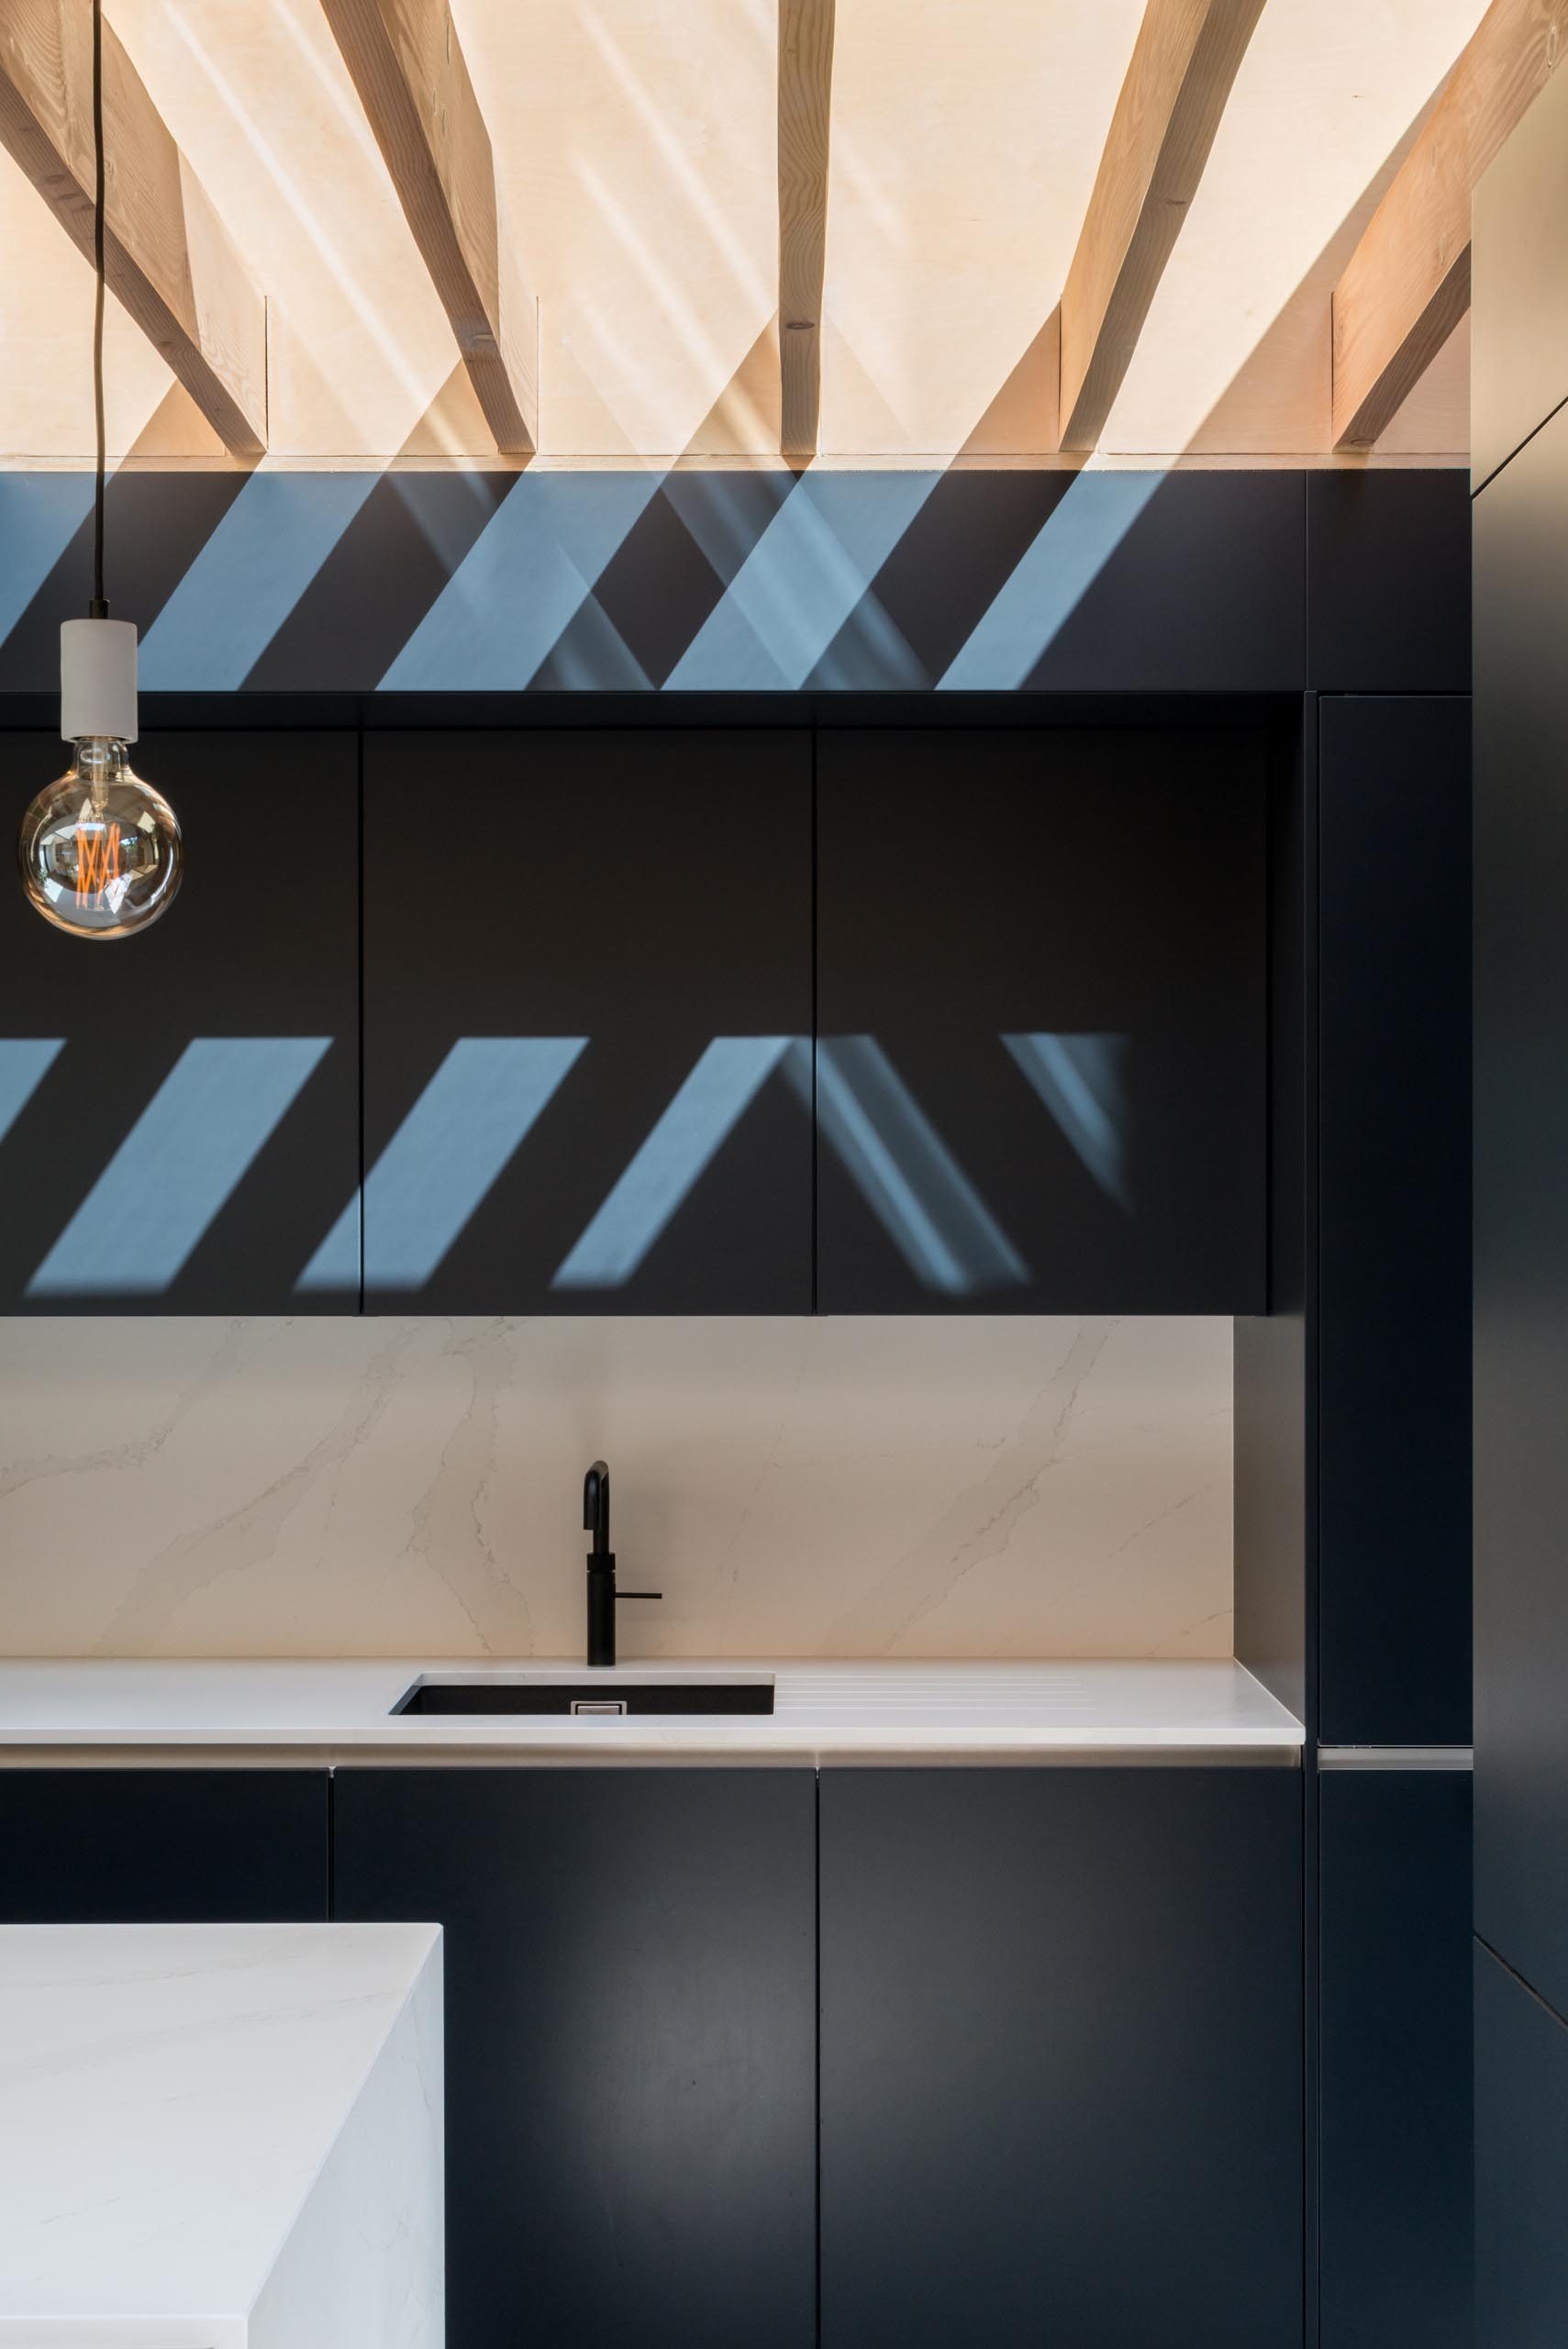 Современные матовые черные кухонные шкафы контрастируют с белыми столешницами.